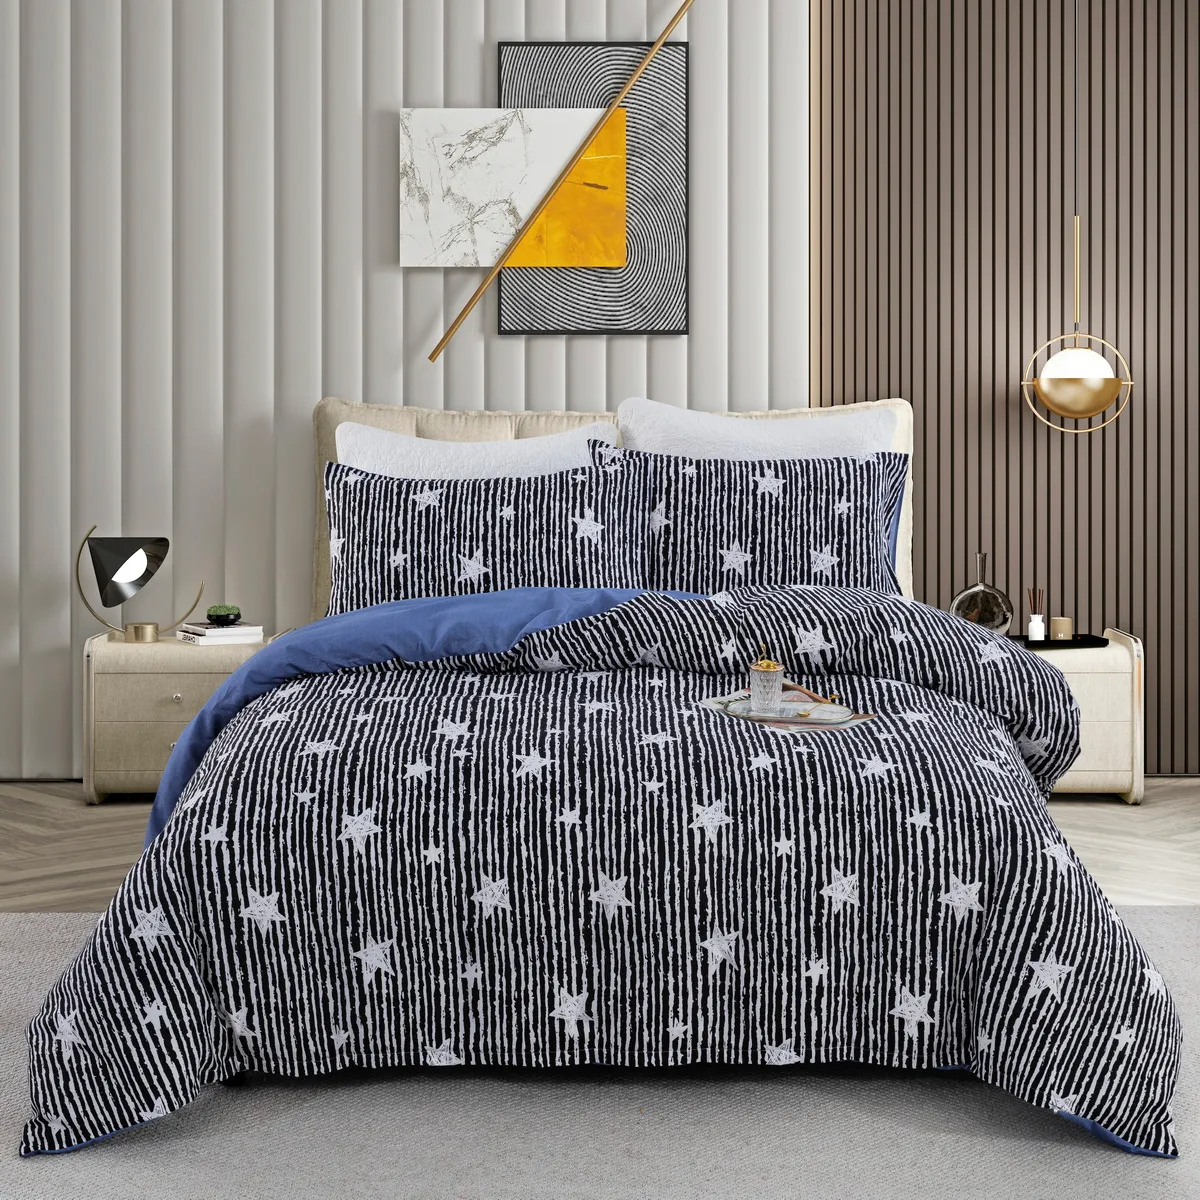 2/3pcs moderno e minimalista desenho animado padrão geométrico jogo de cama, inclui capa de edredom e fronhas Cinzento big image 1